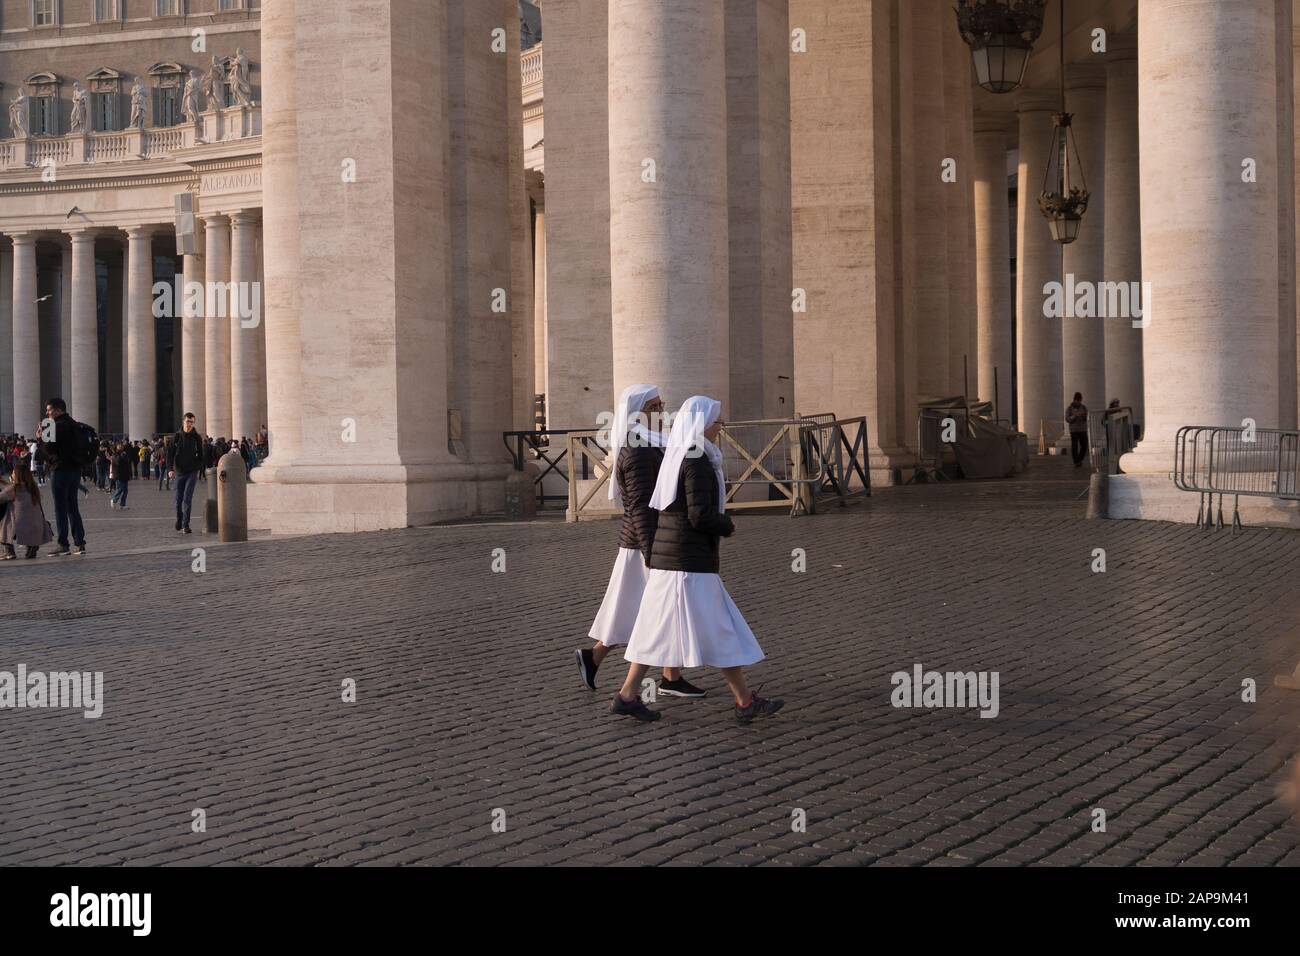 Des religieuses marchent sur la place du vatican à Rome, en Italie Banque D'Images